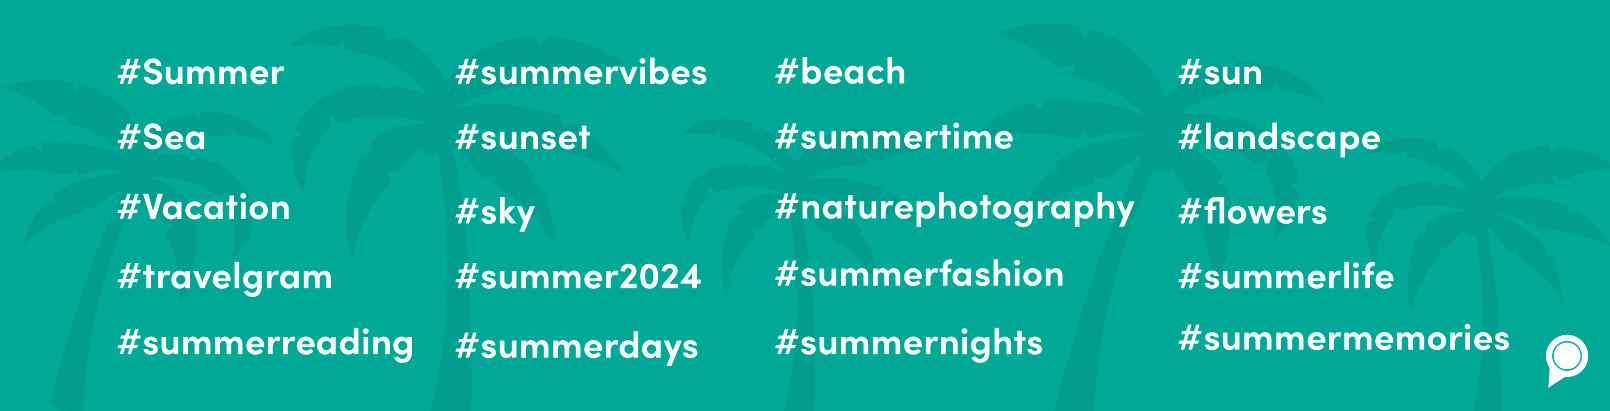 summer taglines